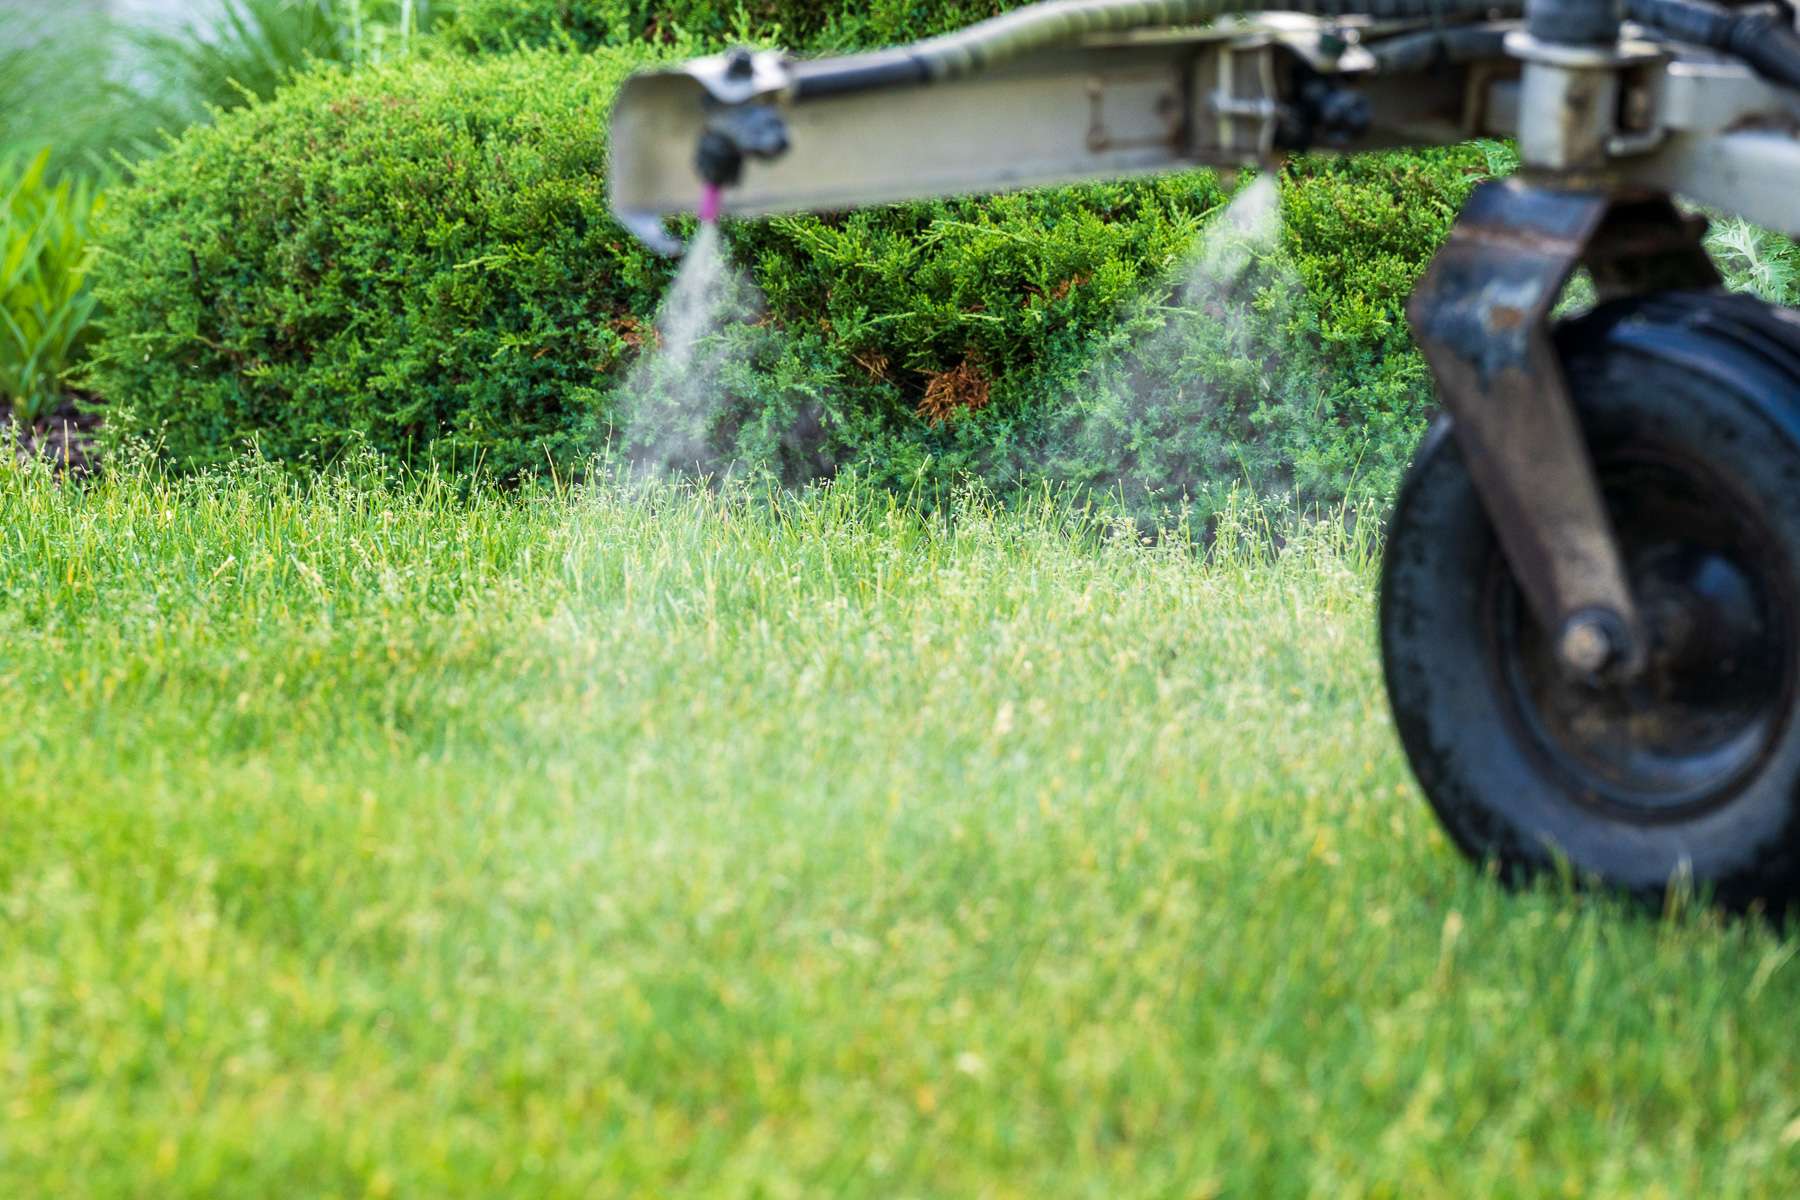 commercial lawn sprayer applying liquid fertilizer or weed control